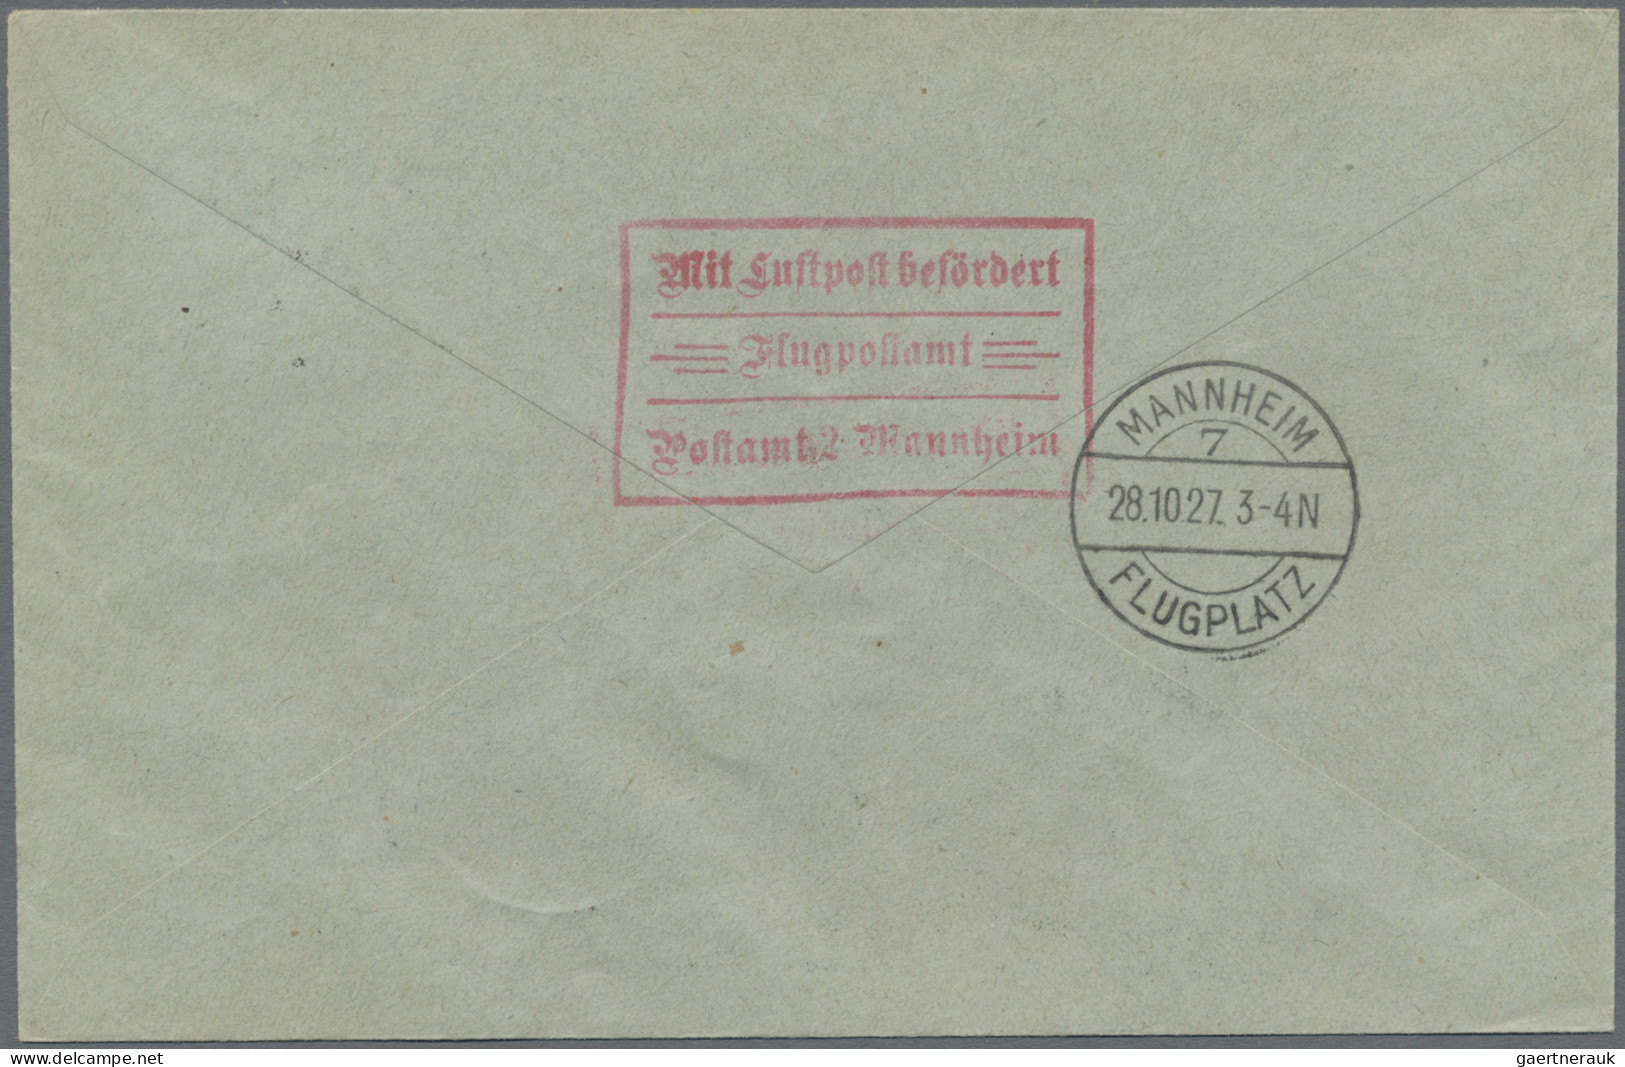 Deutsches Reich - Weimar: 1927, 25 Pf. Goethe Mit Aufdruck IAA Als EF Auf LP-Bri - Covers & Documents